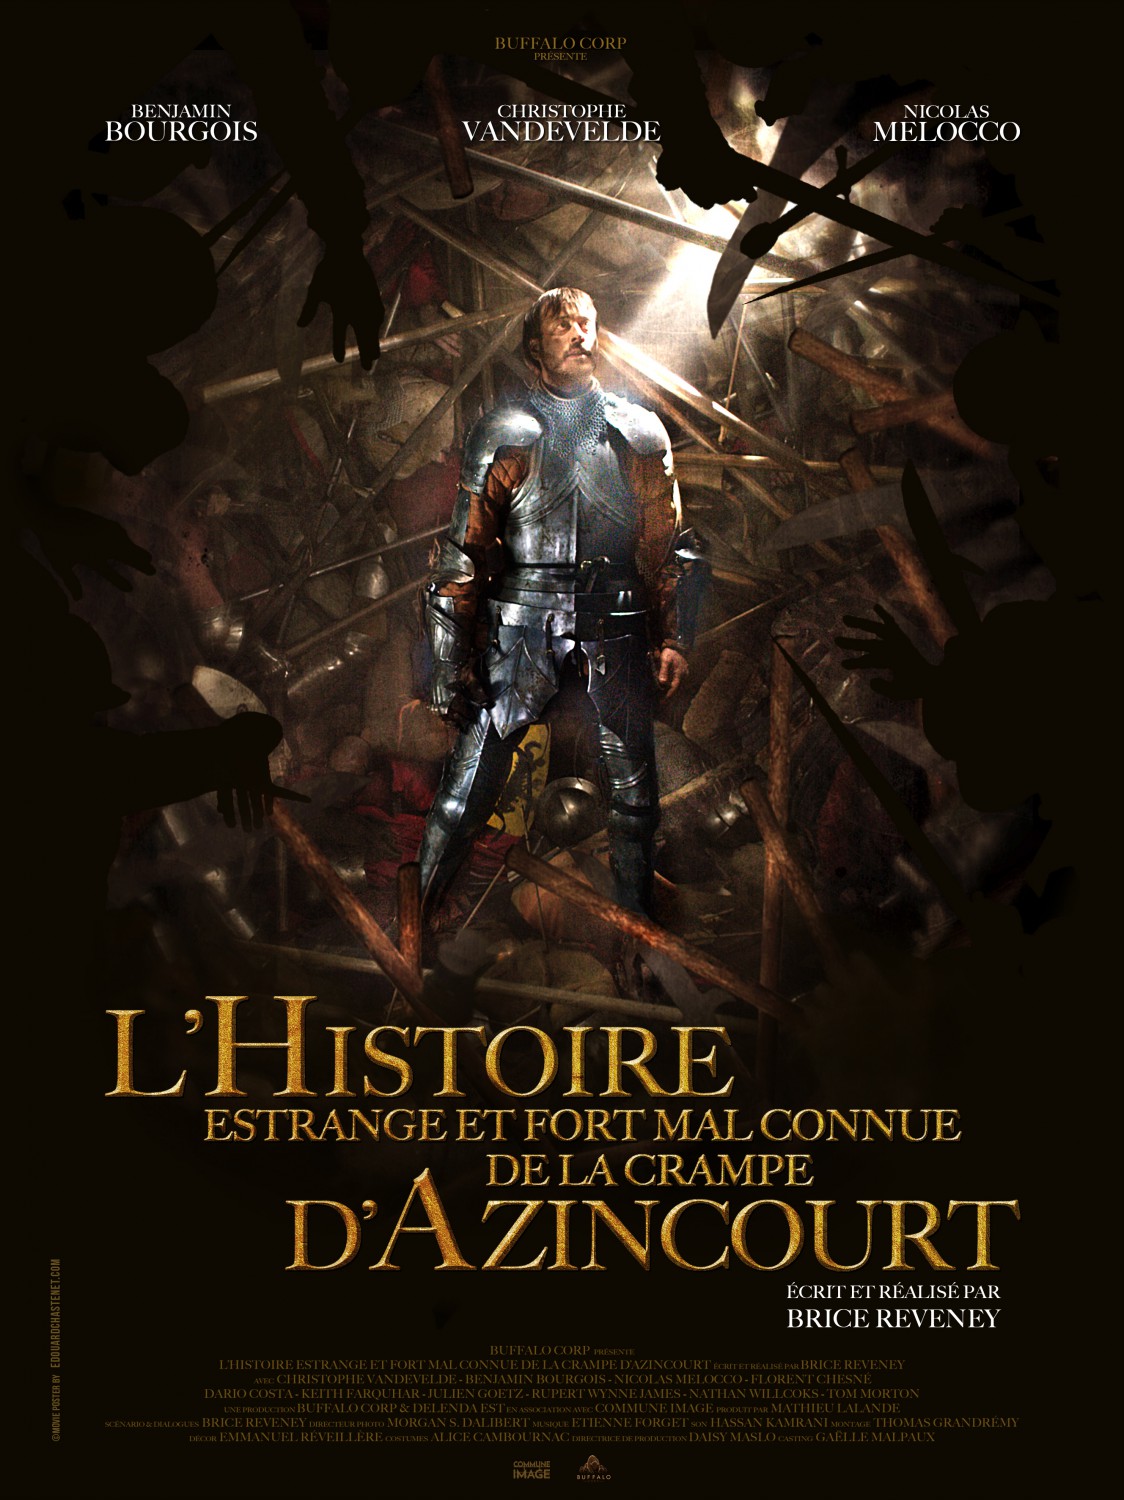 Extra Large Movie Poster Image for L'histoire estrange et fort mal connue de la crampe d'Azincourt